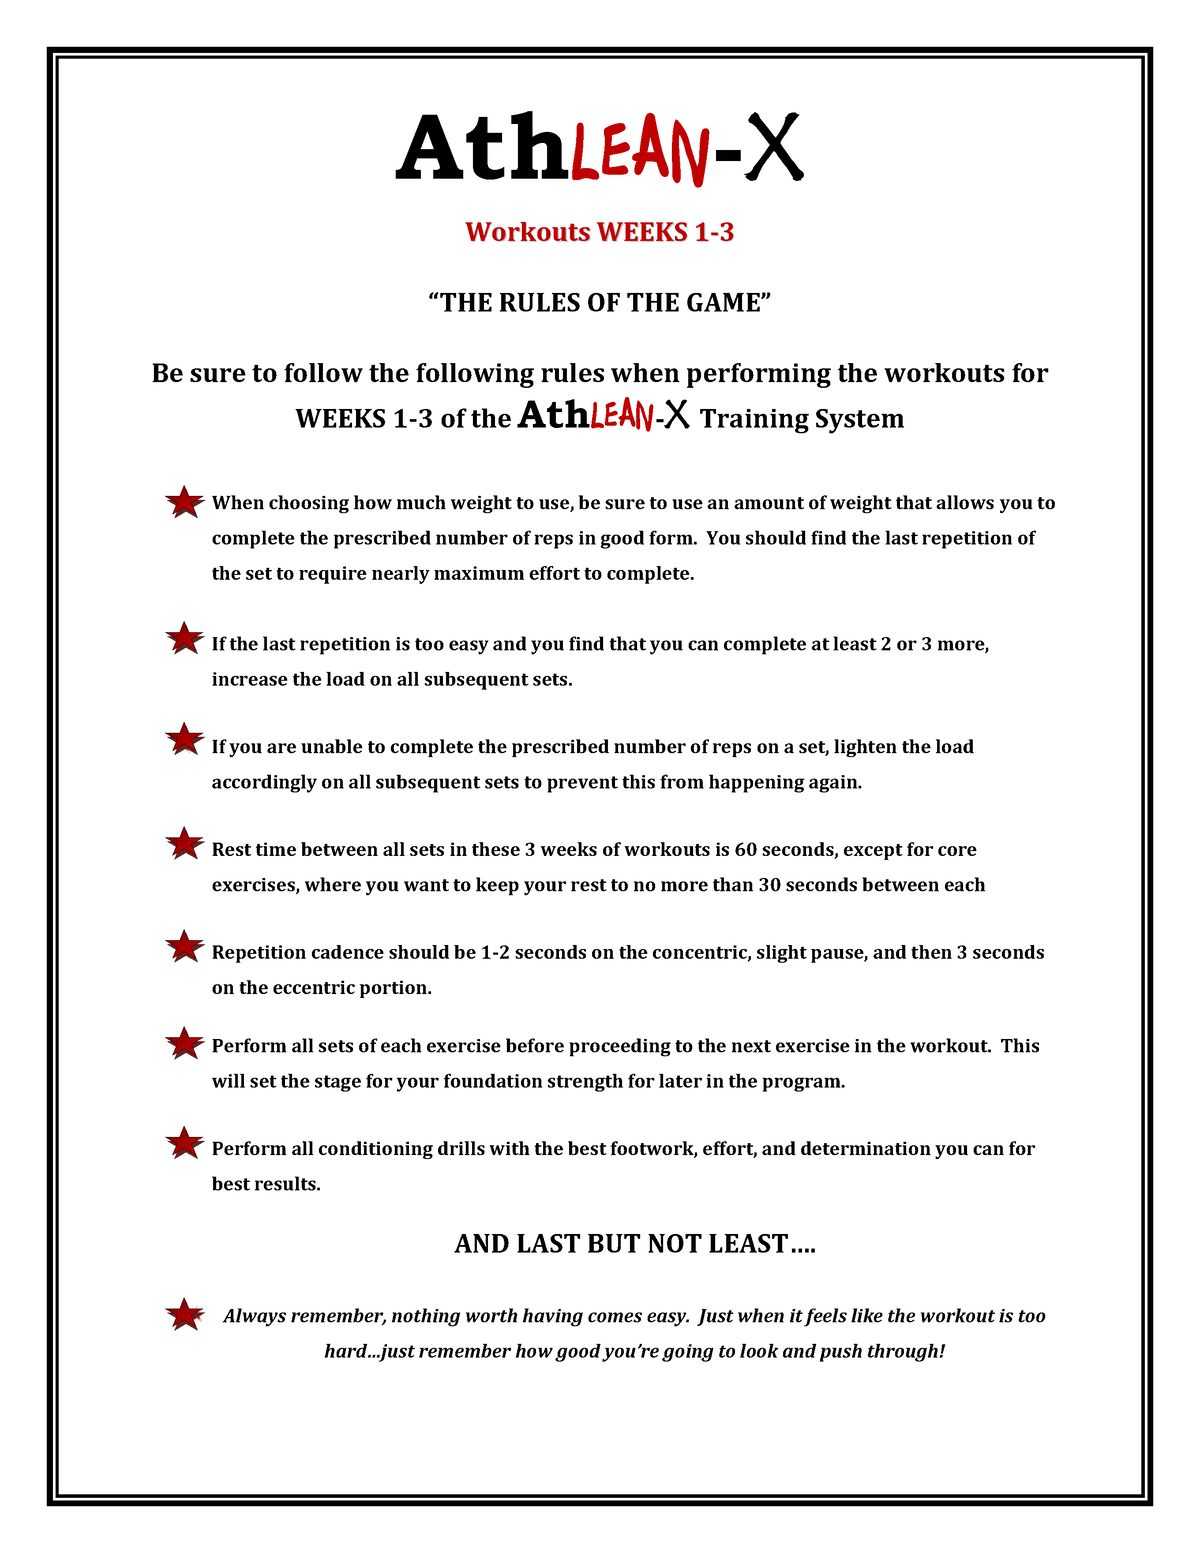 athlean-x-workouts-weeks-1-4-pdf-athlean-x-z-lib